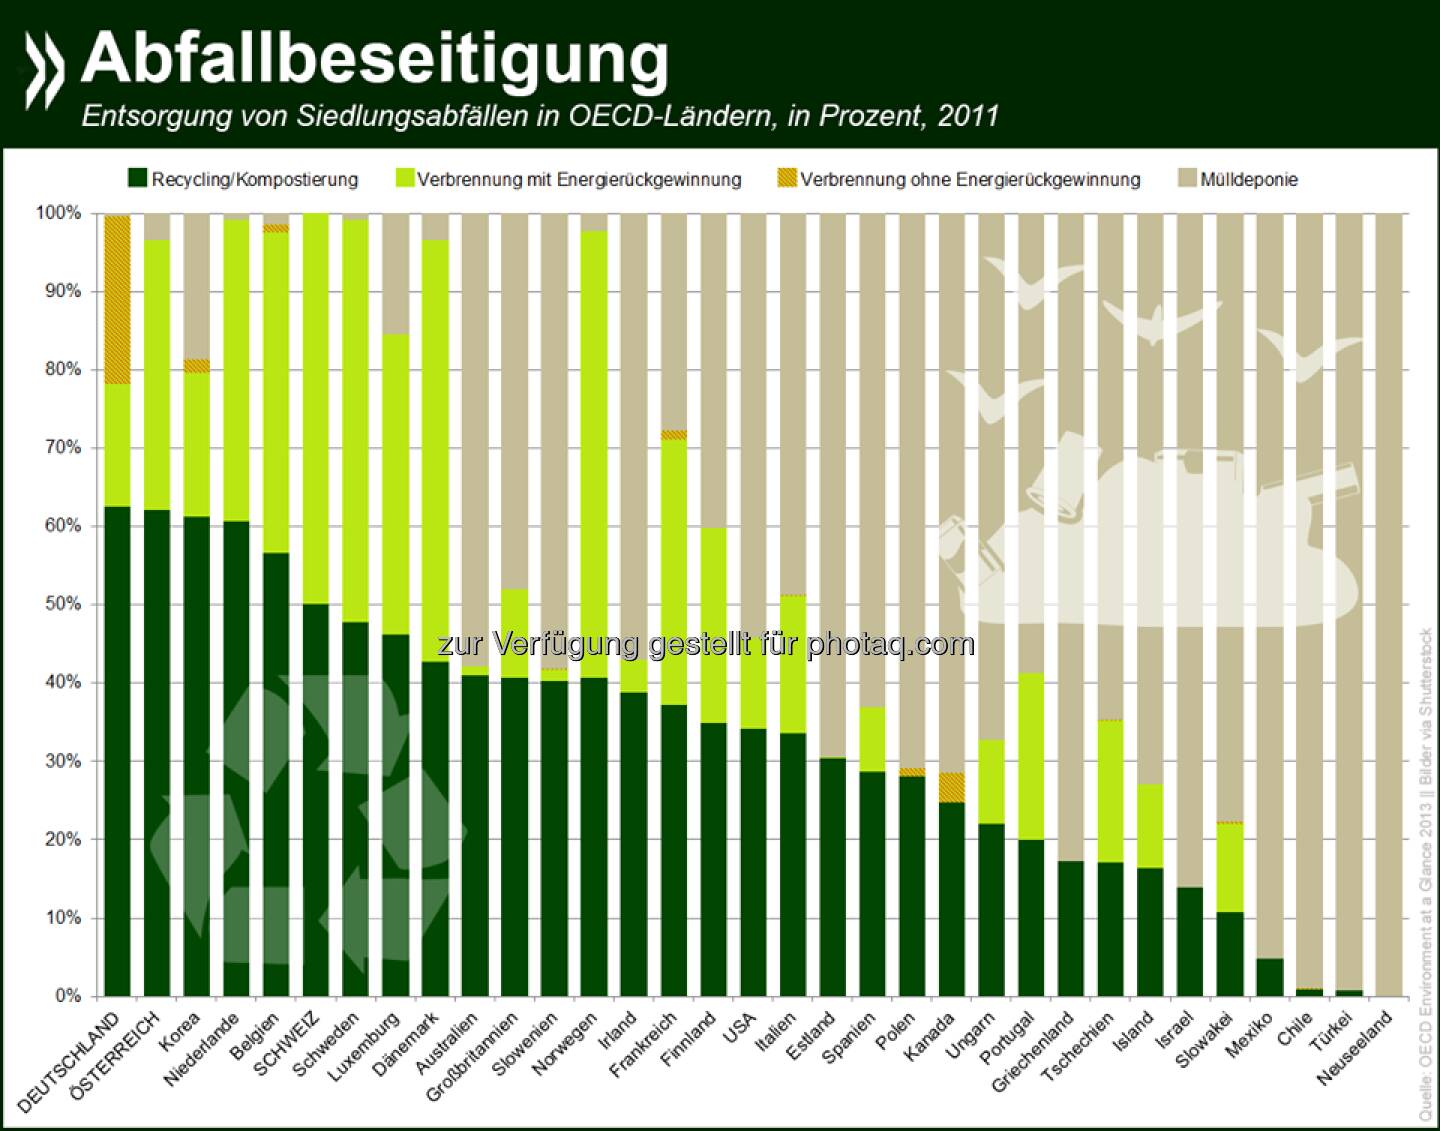 Aus alt mach neu: In Deutschland und Österreich werden Siedlungsabfälle zu fast zwei Dritteln wiederverwertet.  Damit sind die beiden Länder die Recycling-Meister der OECD.

Mehr Infos unter: http://bit.ly/1yp2gQB  Source: http://twitter.com/oecdstatistik